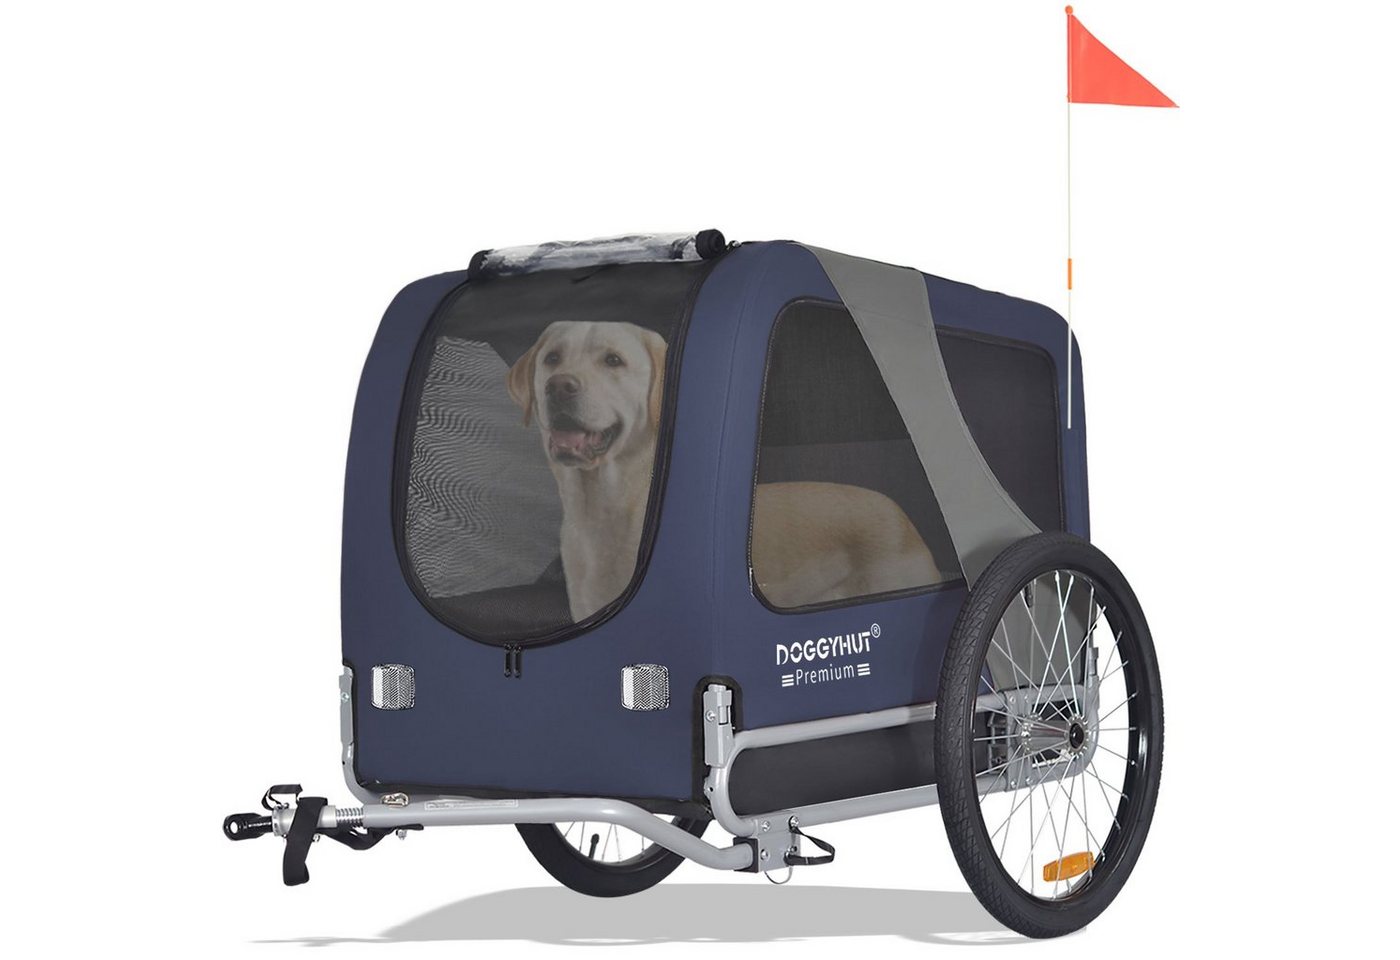 TIGGO Fahrradhundeanhänger DOGGYHUT® Hundefahrradanhänger 15 - 30kg Hundeanhänger Fahrradanhänger von TIGGO